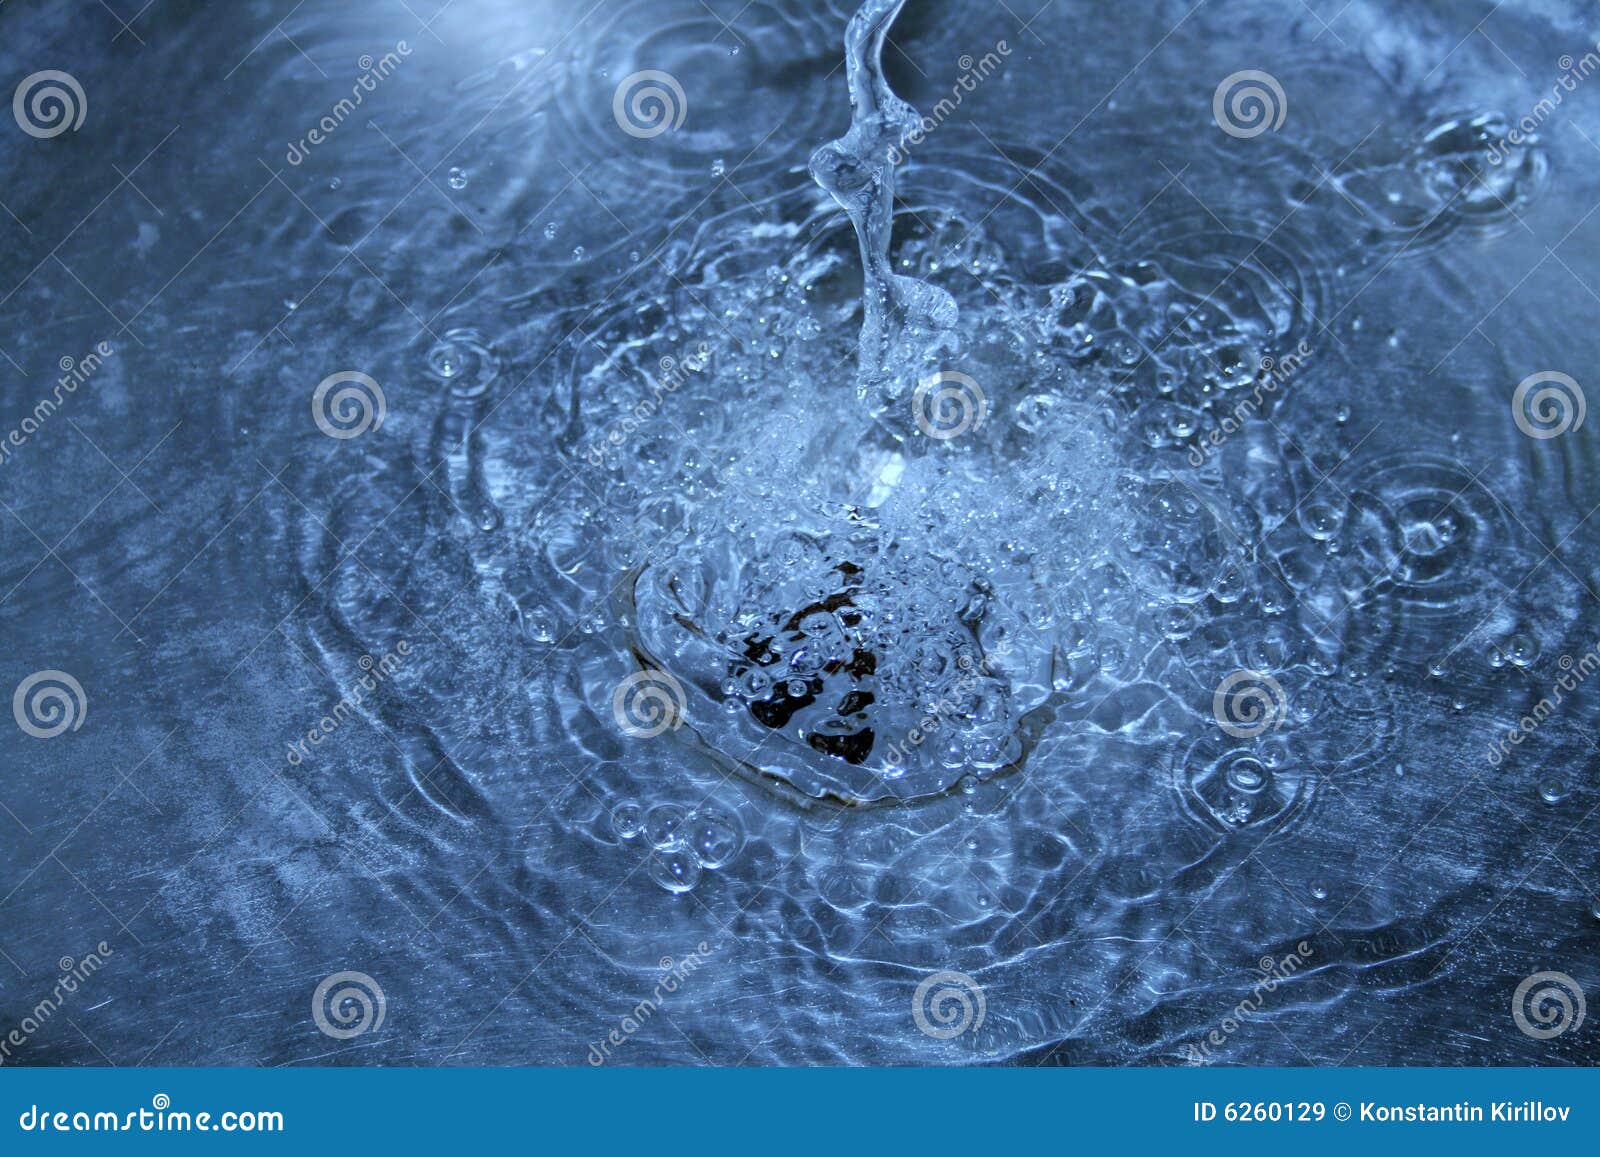 Второму варианту вода в. Вода в раковине сверху. Раковина с водой. Раковина с водой вид сверху. Вода мойка.